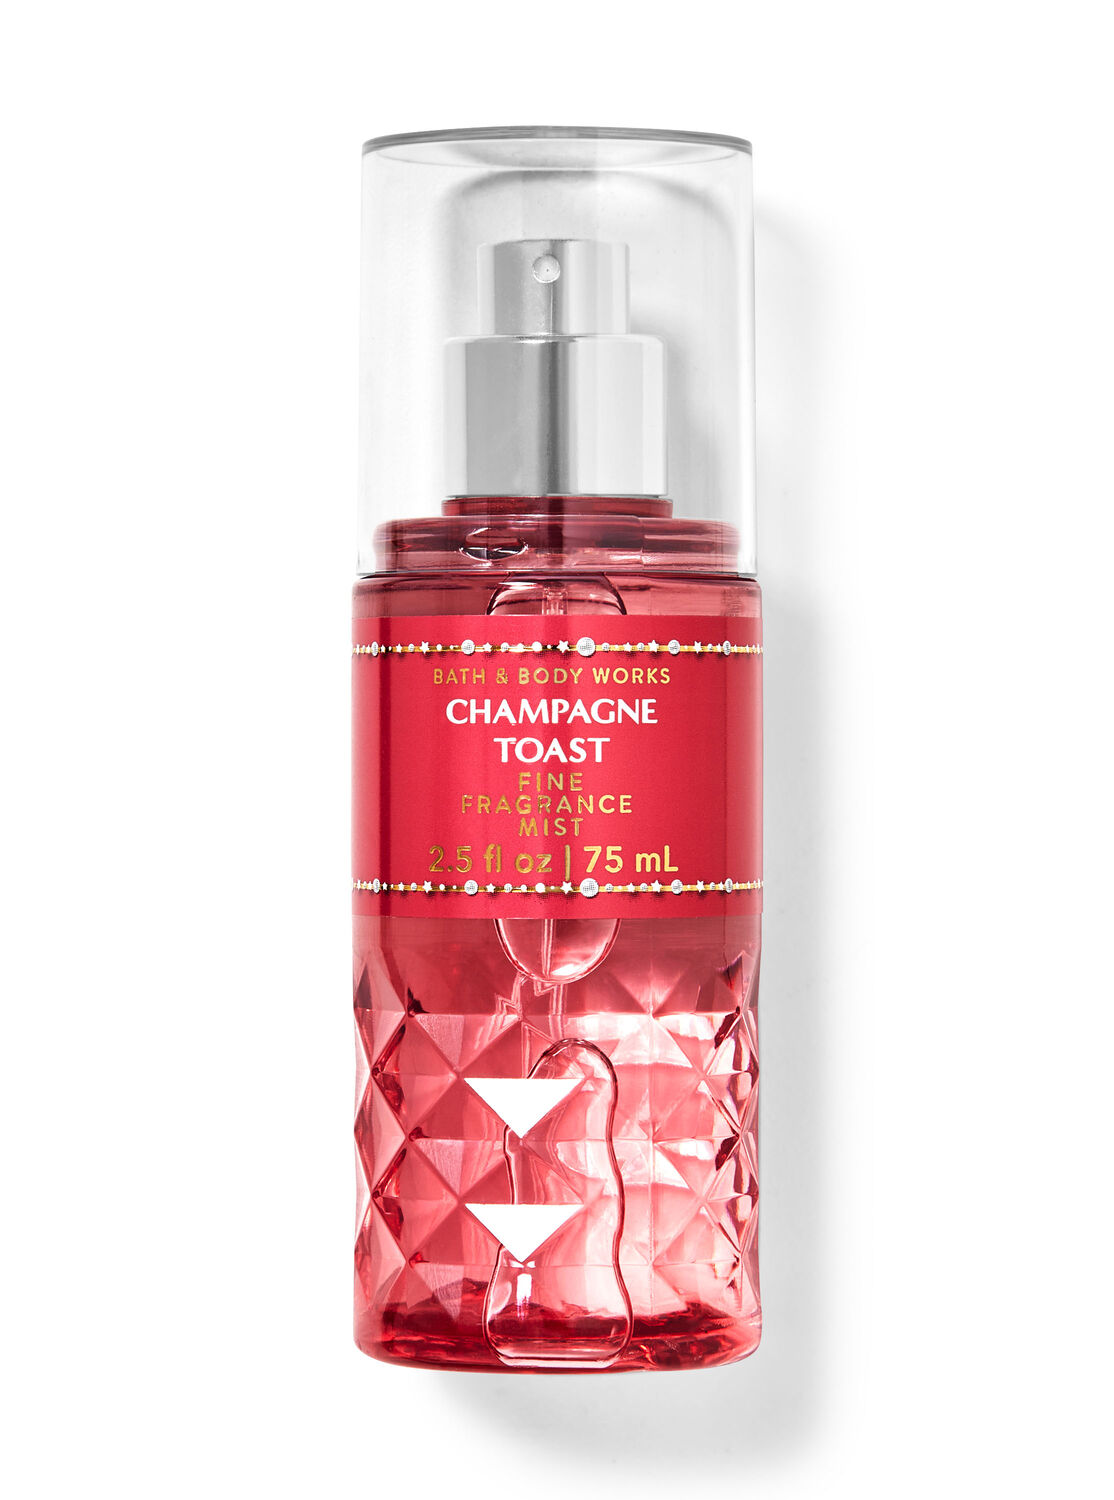 New Bath & Body Works Champagne Toast Fine Fragrance Body Mist 8